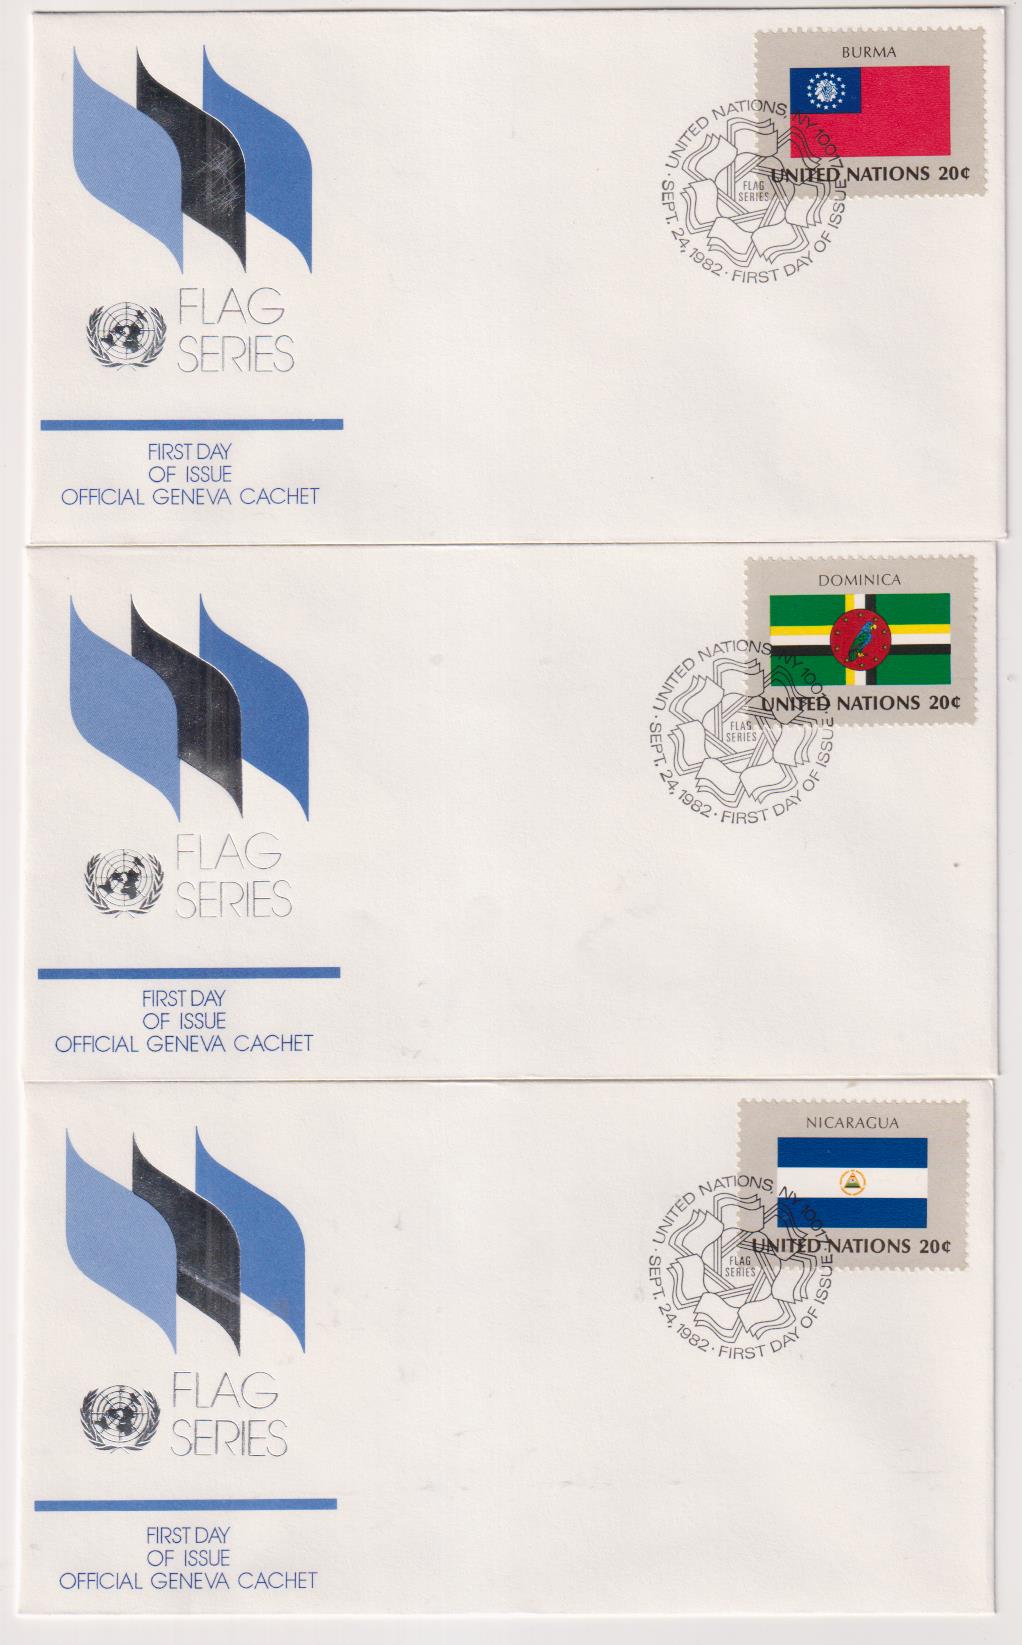 Naciones Unidas. Serie Banderas. 3 Sobres Primer Día: Burma, Dominica y Nicaragua 1982